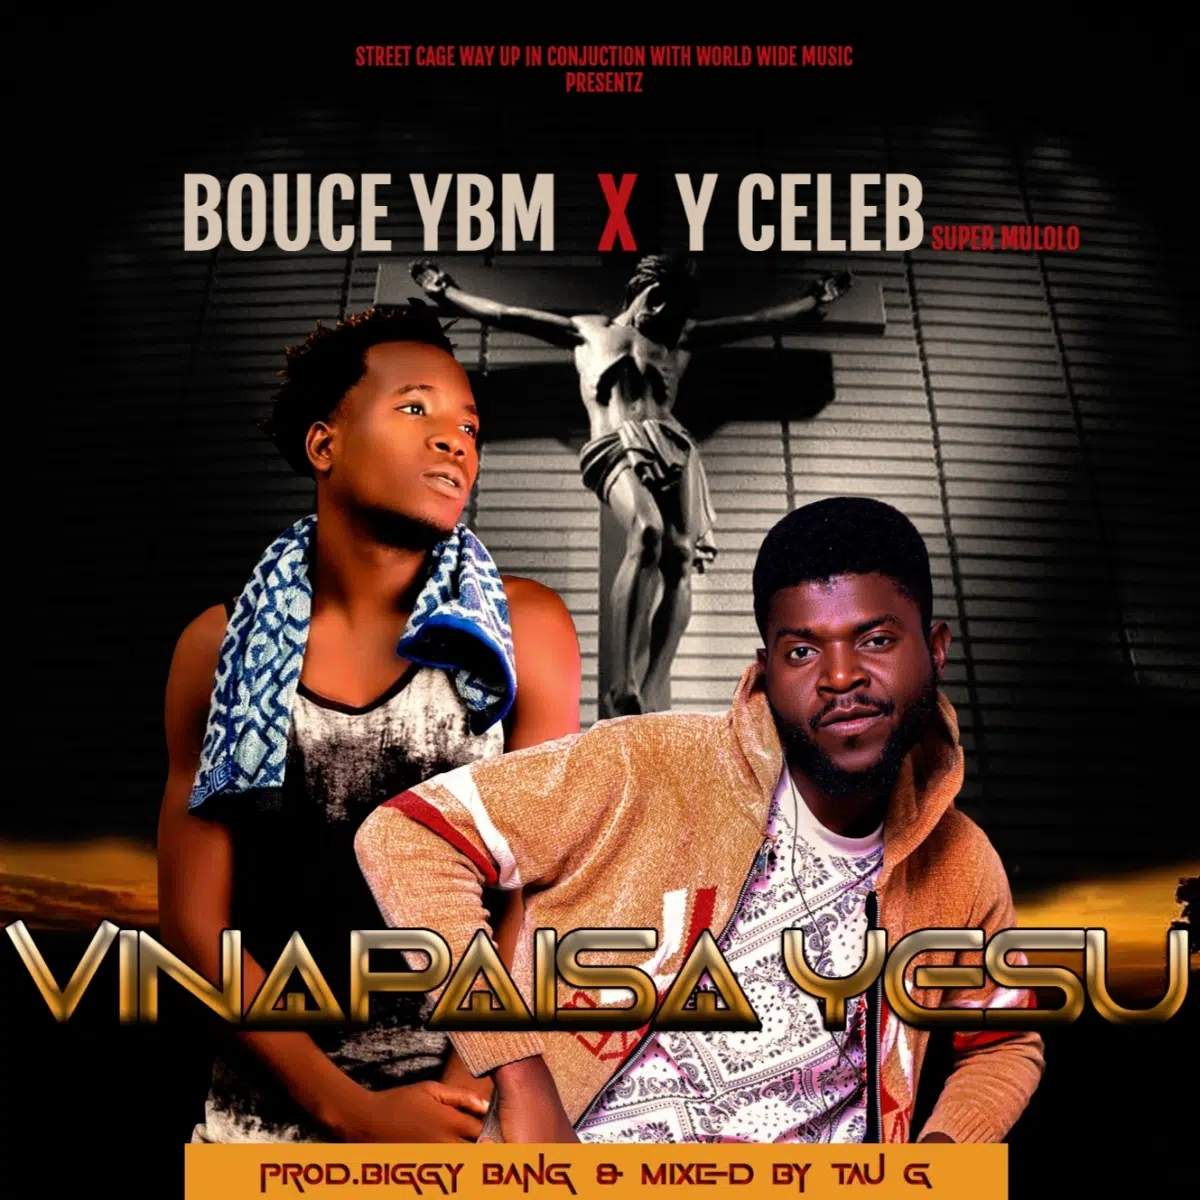 DOWNLOAD: Bouce (YBM) Ft Y Celeb – “Vina Paisa Yesu” Mp3